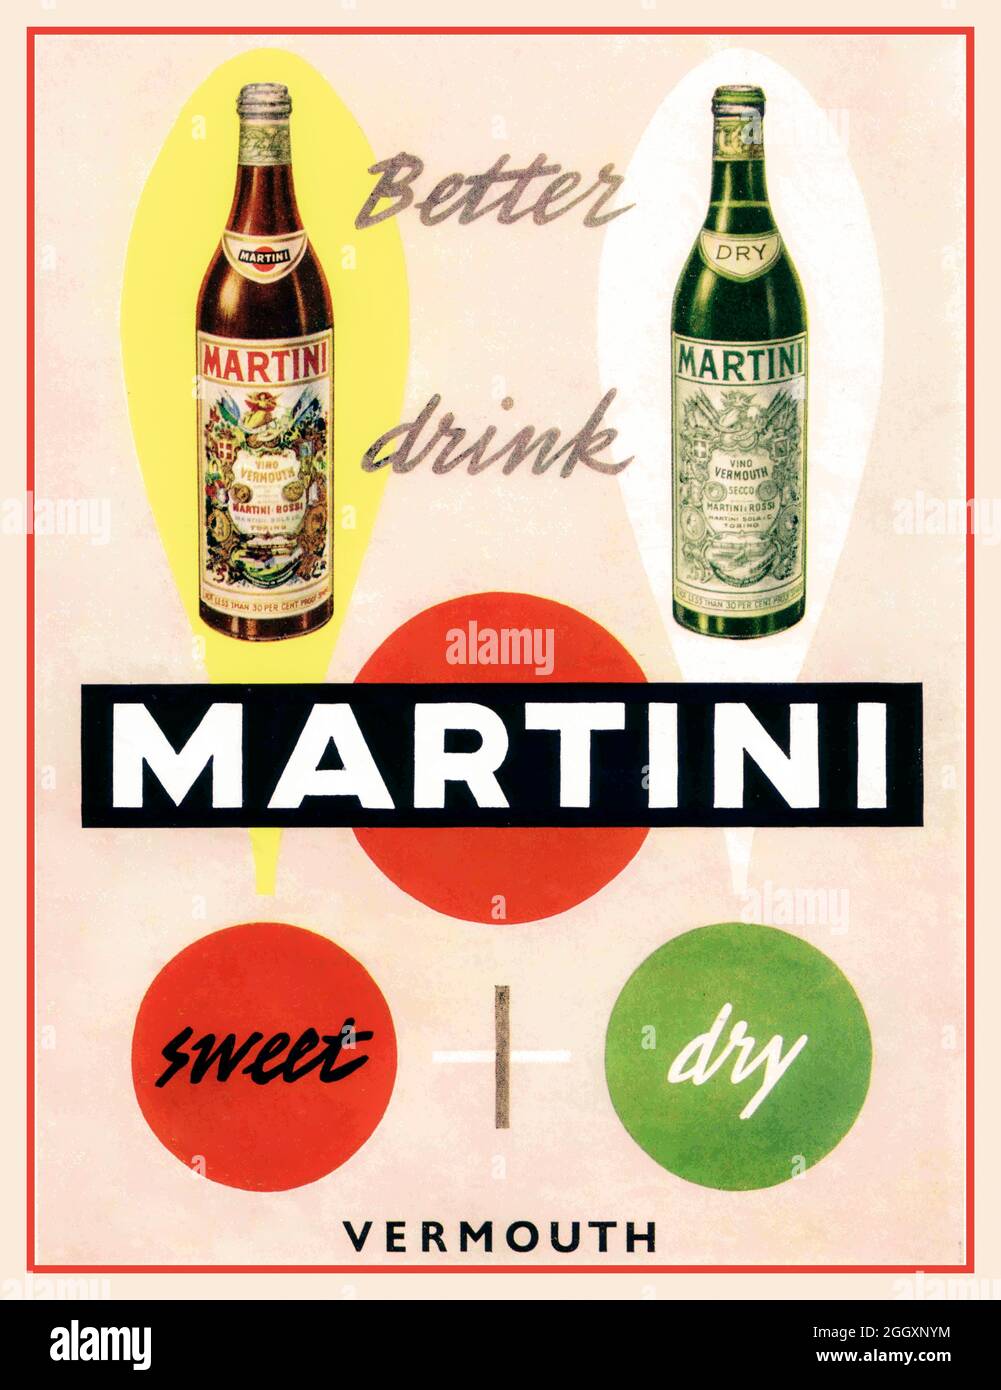 Vintage 1950 Martini Vermouth drinks Alcohol Advertisement Poster pubblicitario 'Better drink Martini' 1950 due bottiglie di vino fortificato Martini Vermouth, una dolce, una extra secca. Foto Stock